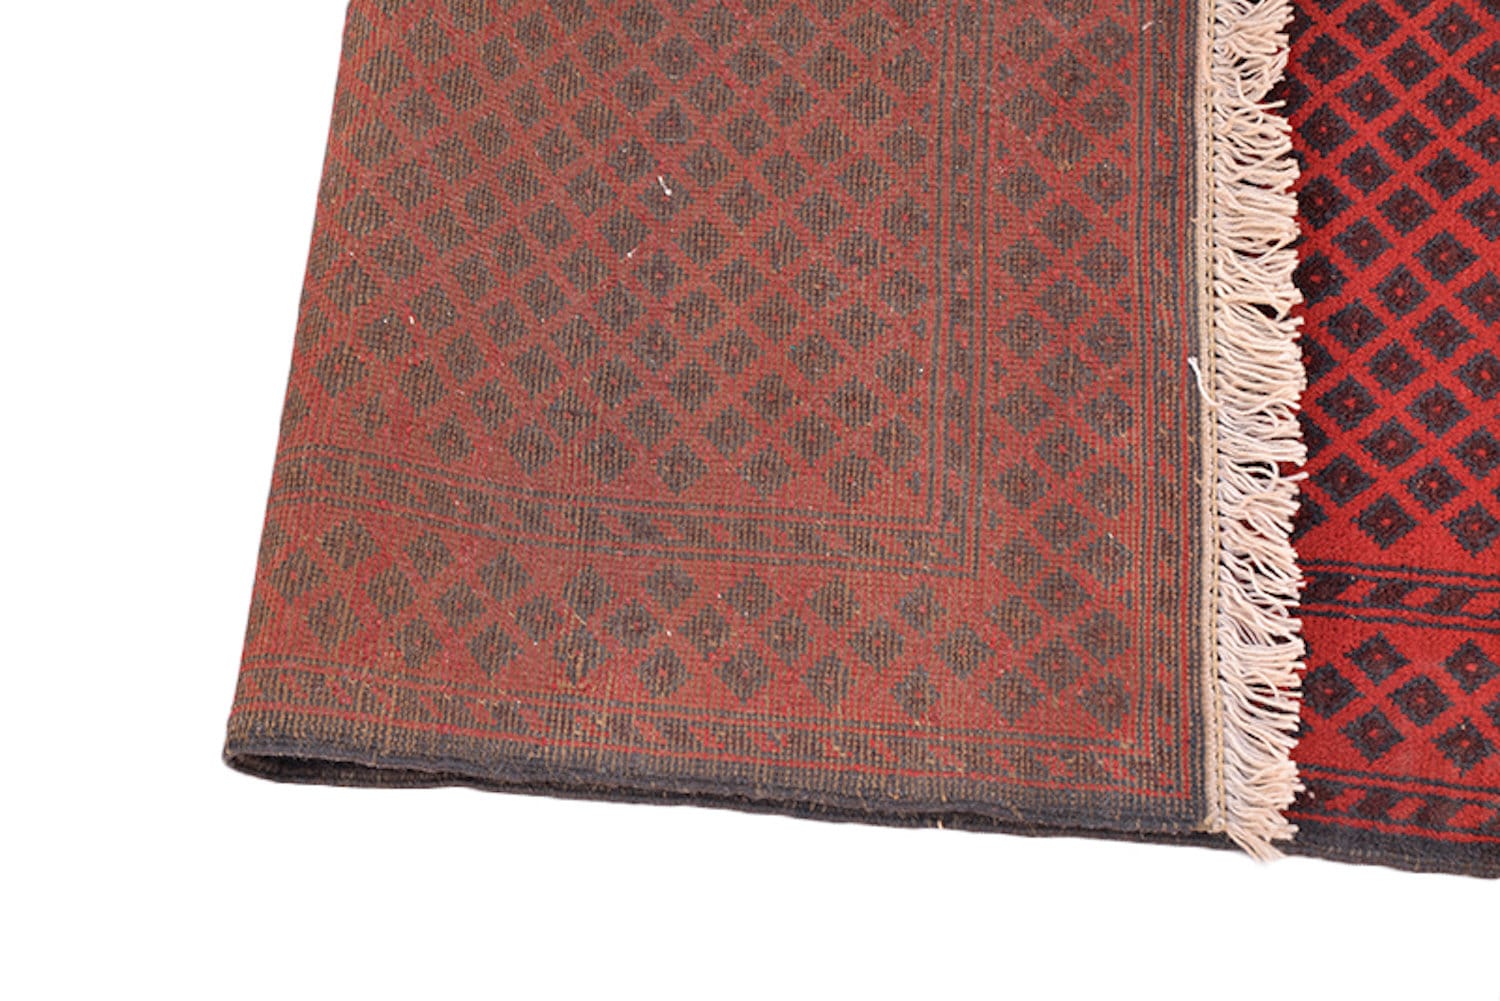 Dark Oriental Runner Rug | Vintage Red Runner | 2 x 9 Feet | Antique Runner Rug | Low Pile | Wool Hand Woven